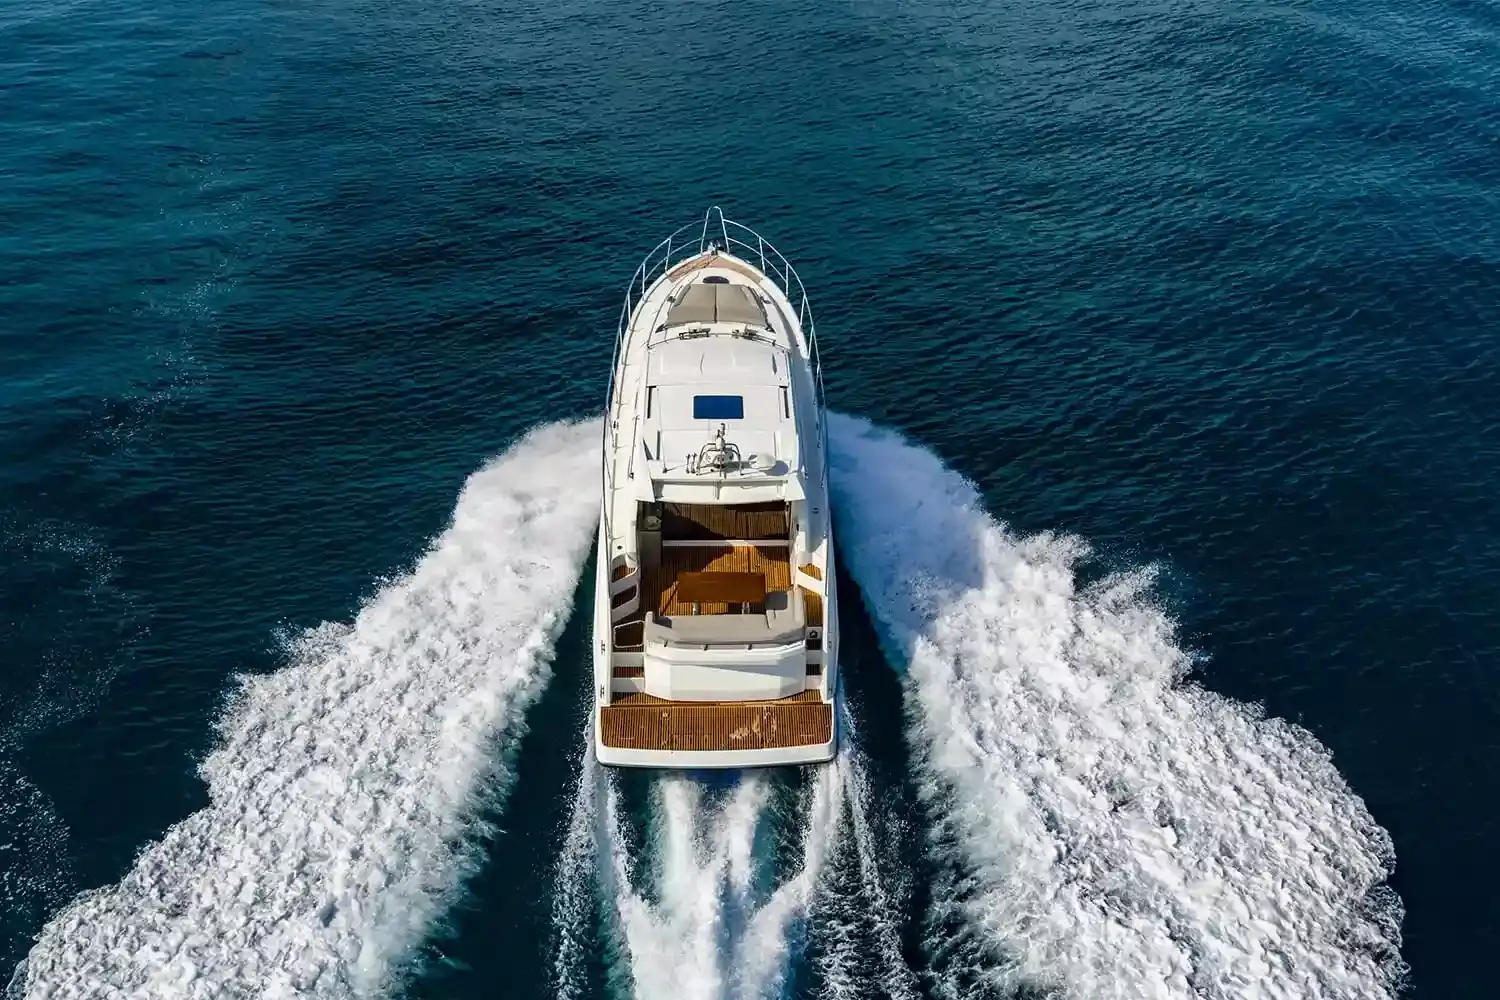 Beneteau GT49 yacht for sale